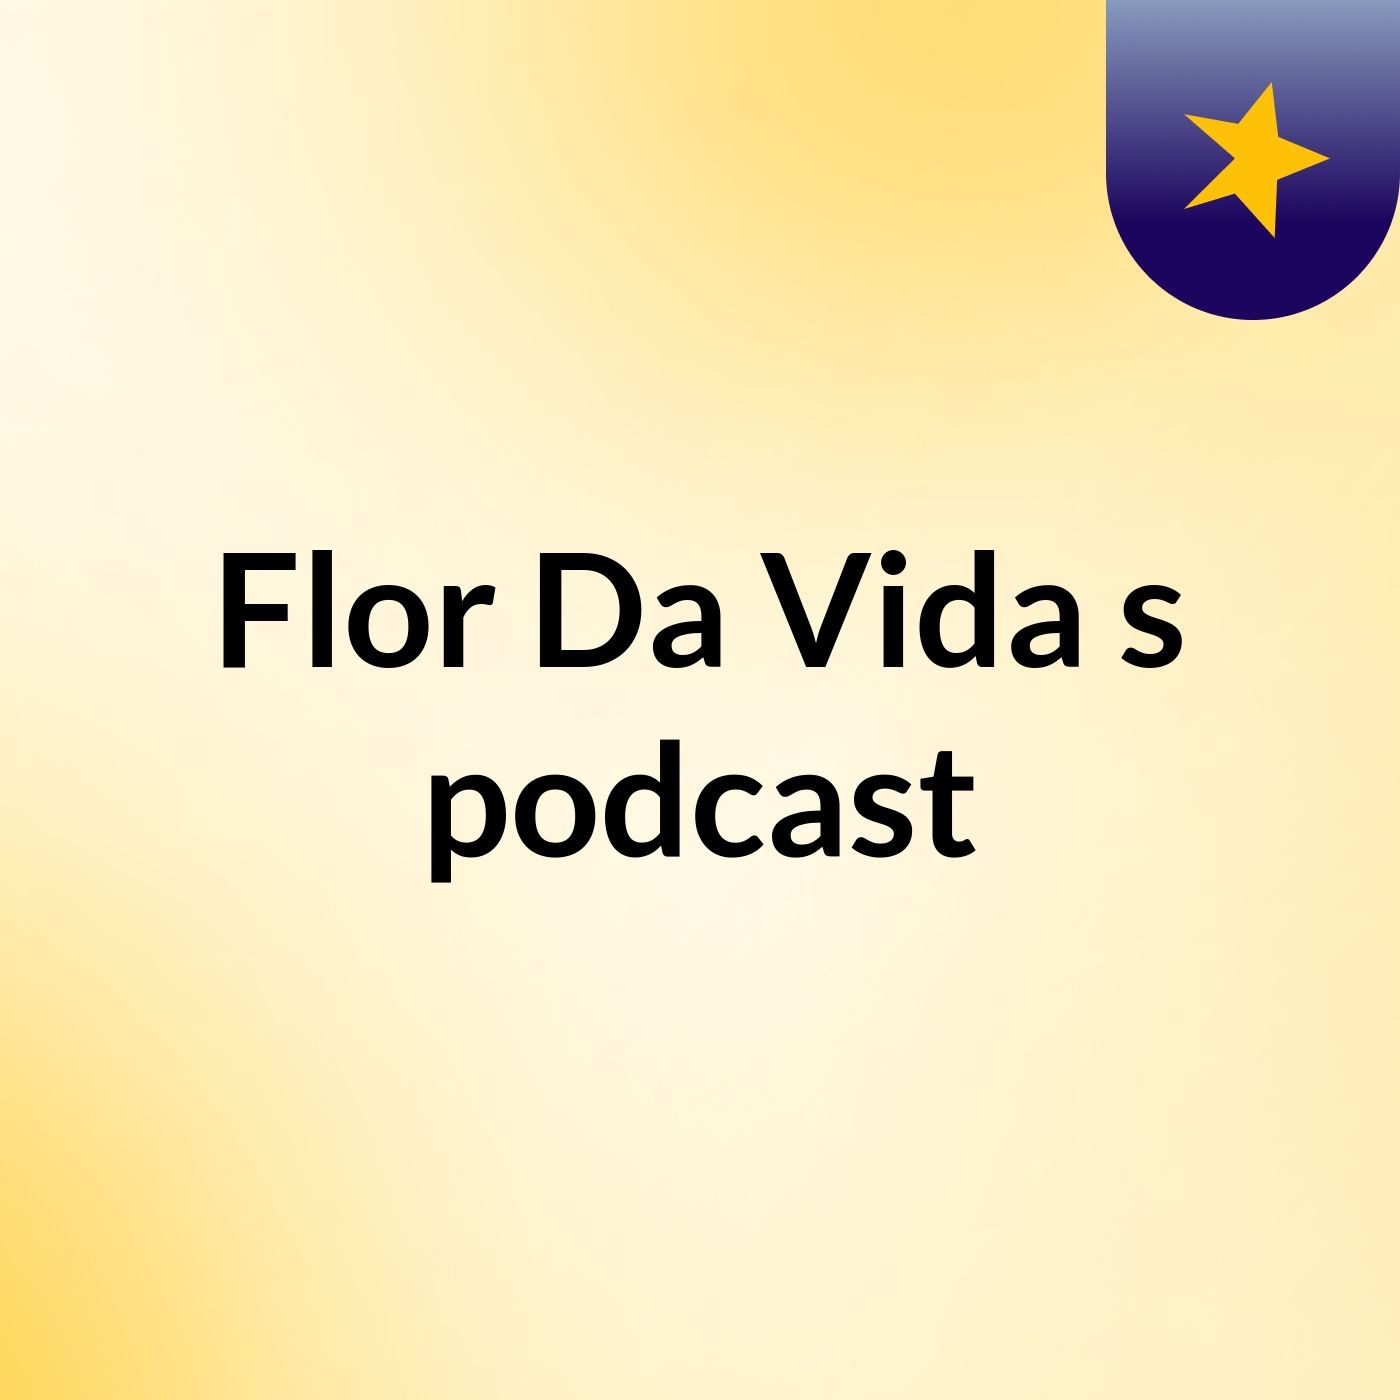 Flor Da Vida's podcast